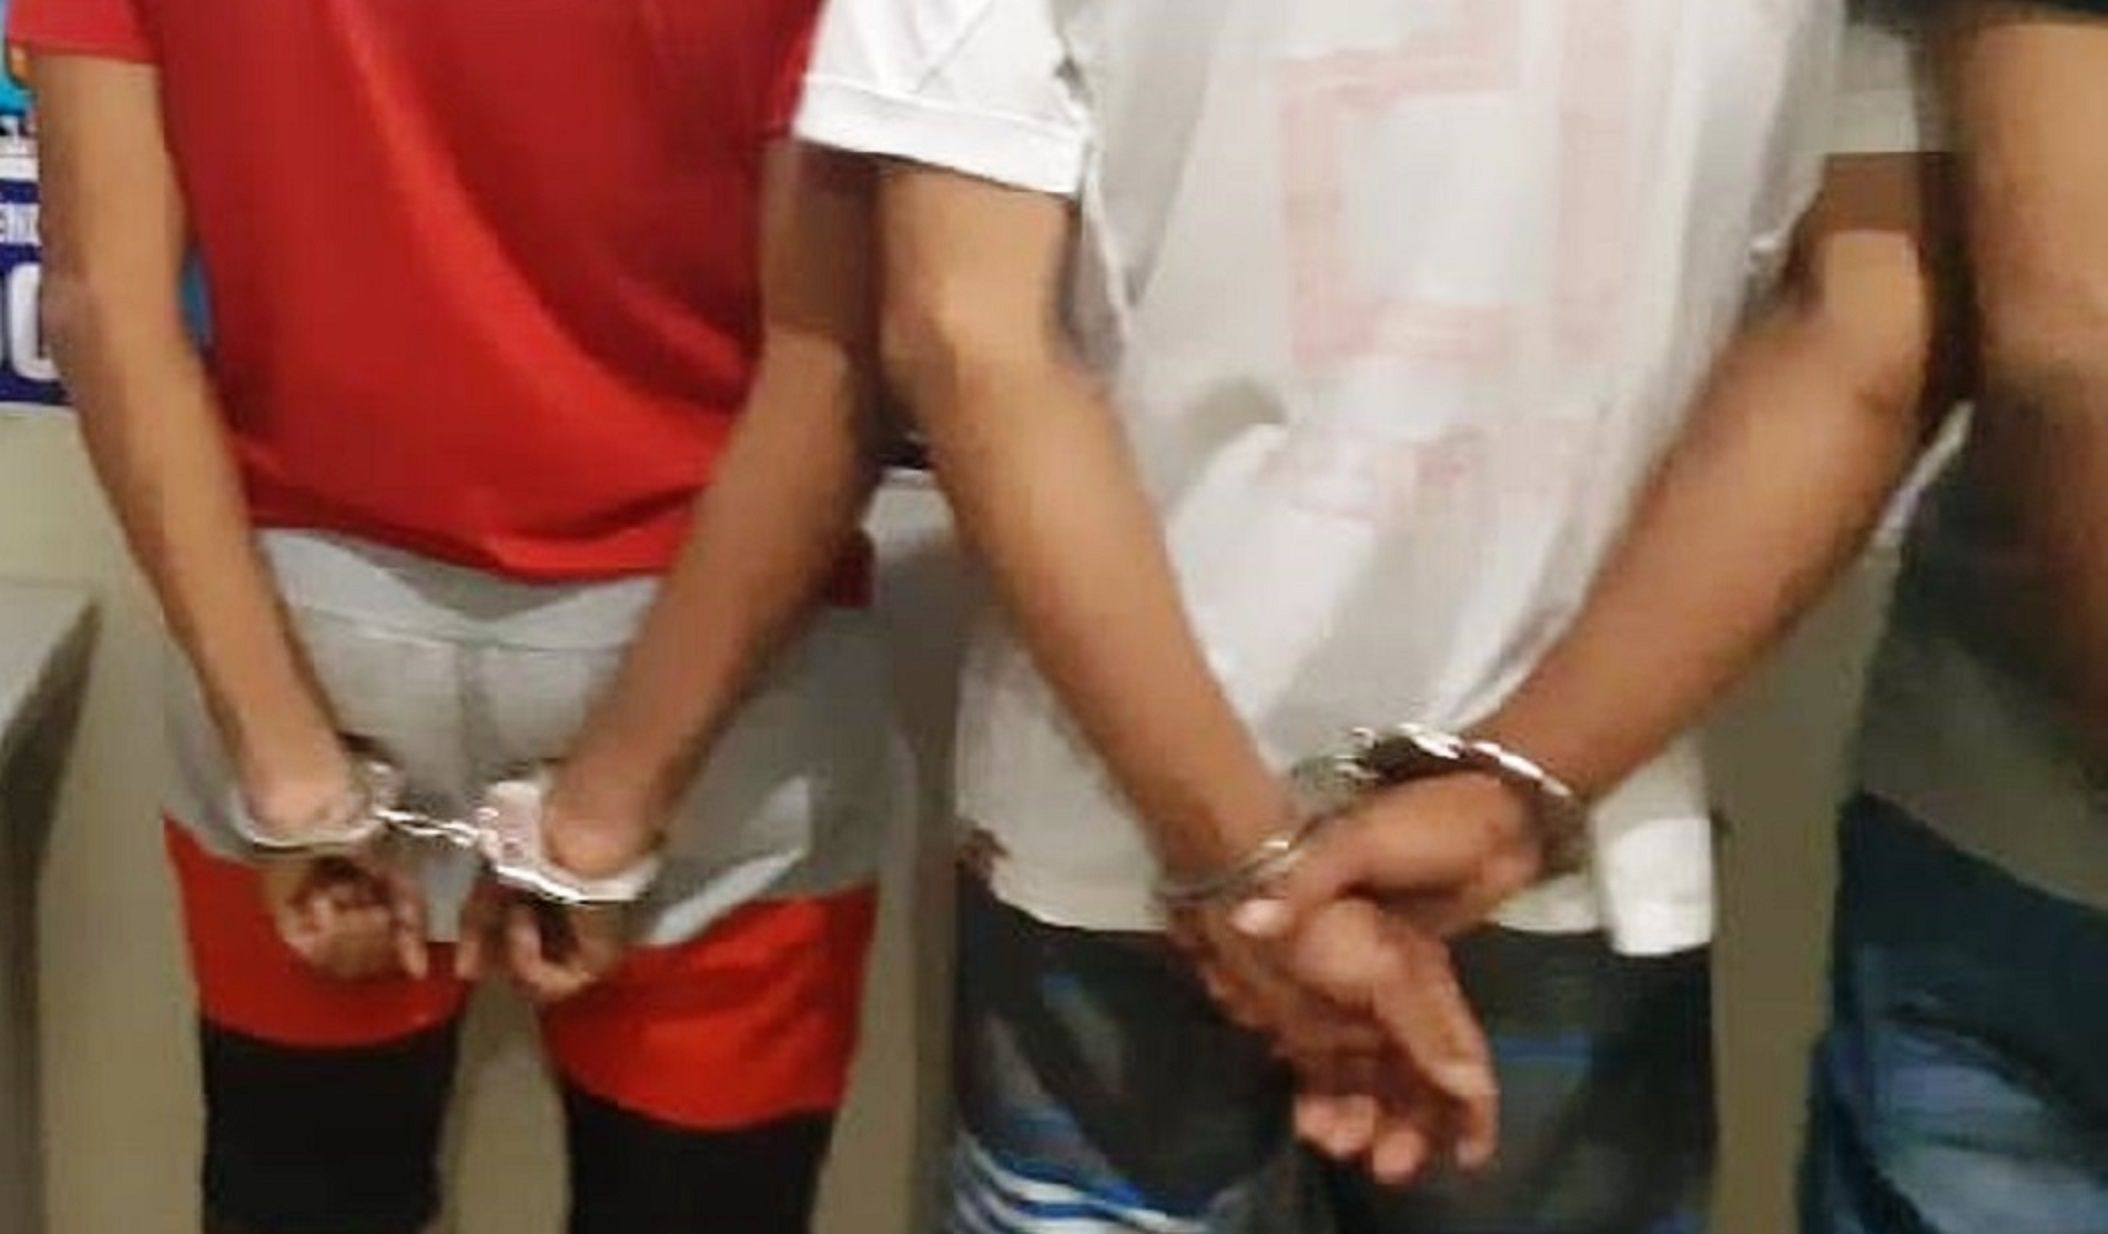 Mulinhas so detidos por trfico  de drogas em Mirassol DOeste